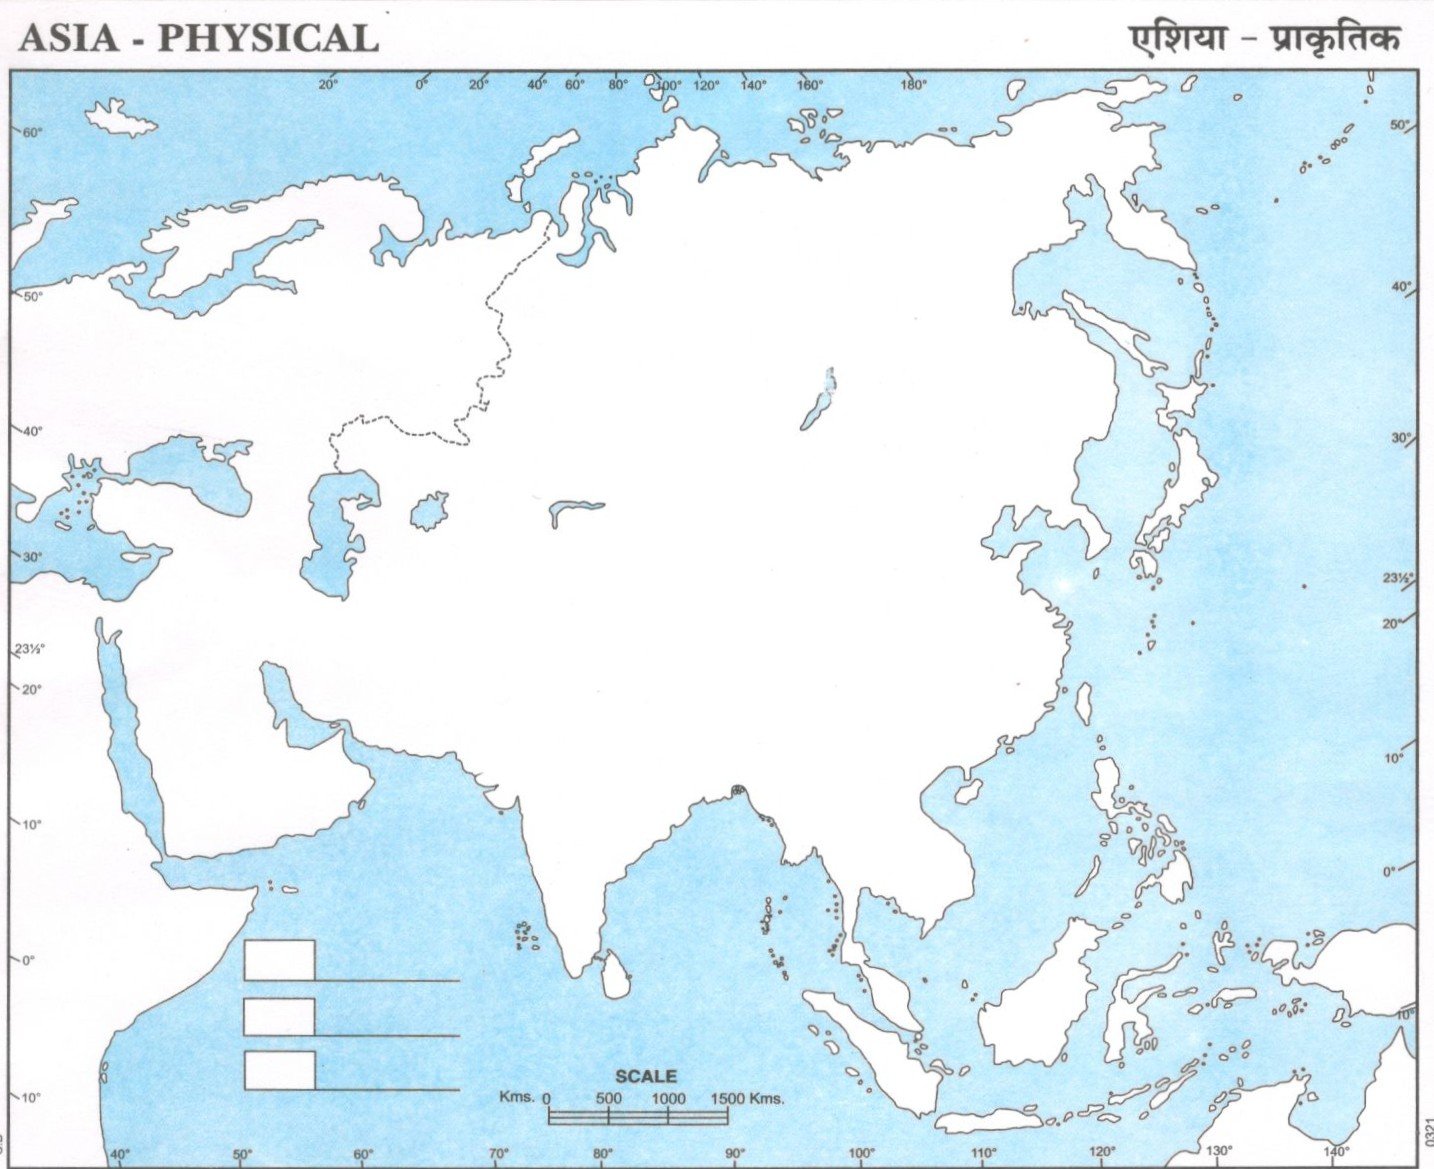 Physical Map Of Asia Pdf Physical Map Of Asia For School (Blank) - Pdf Download